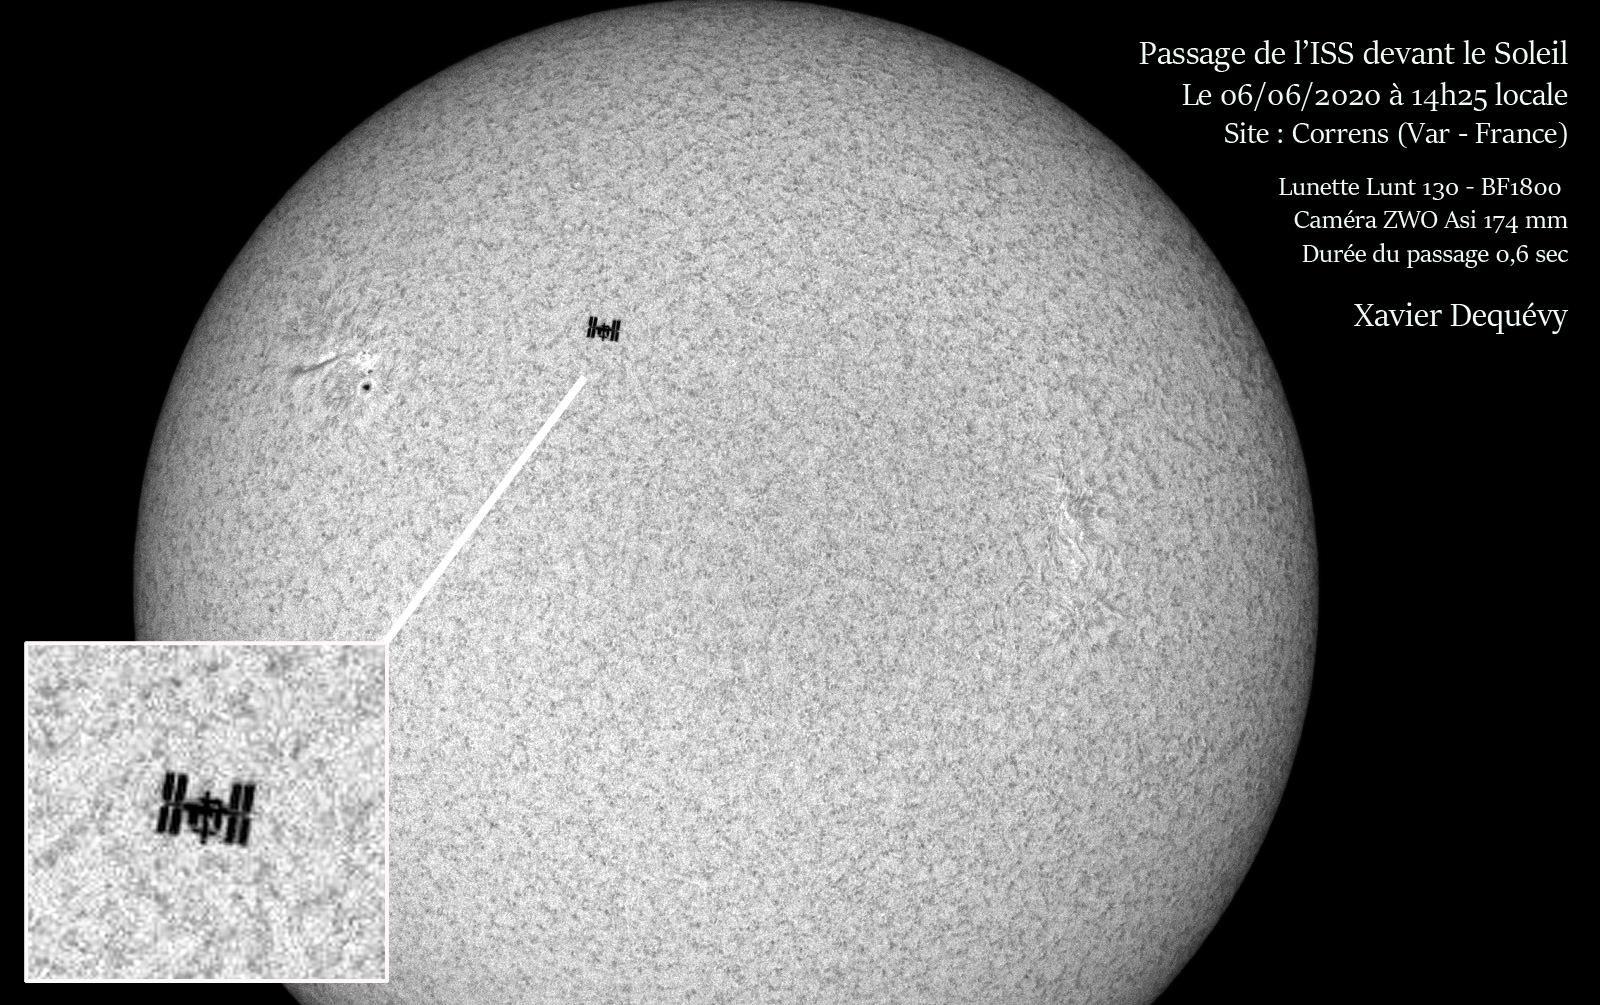 LUNT LS130MT/B1800 Allround APO Teleskop für Sonne + Sternenhimmel